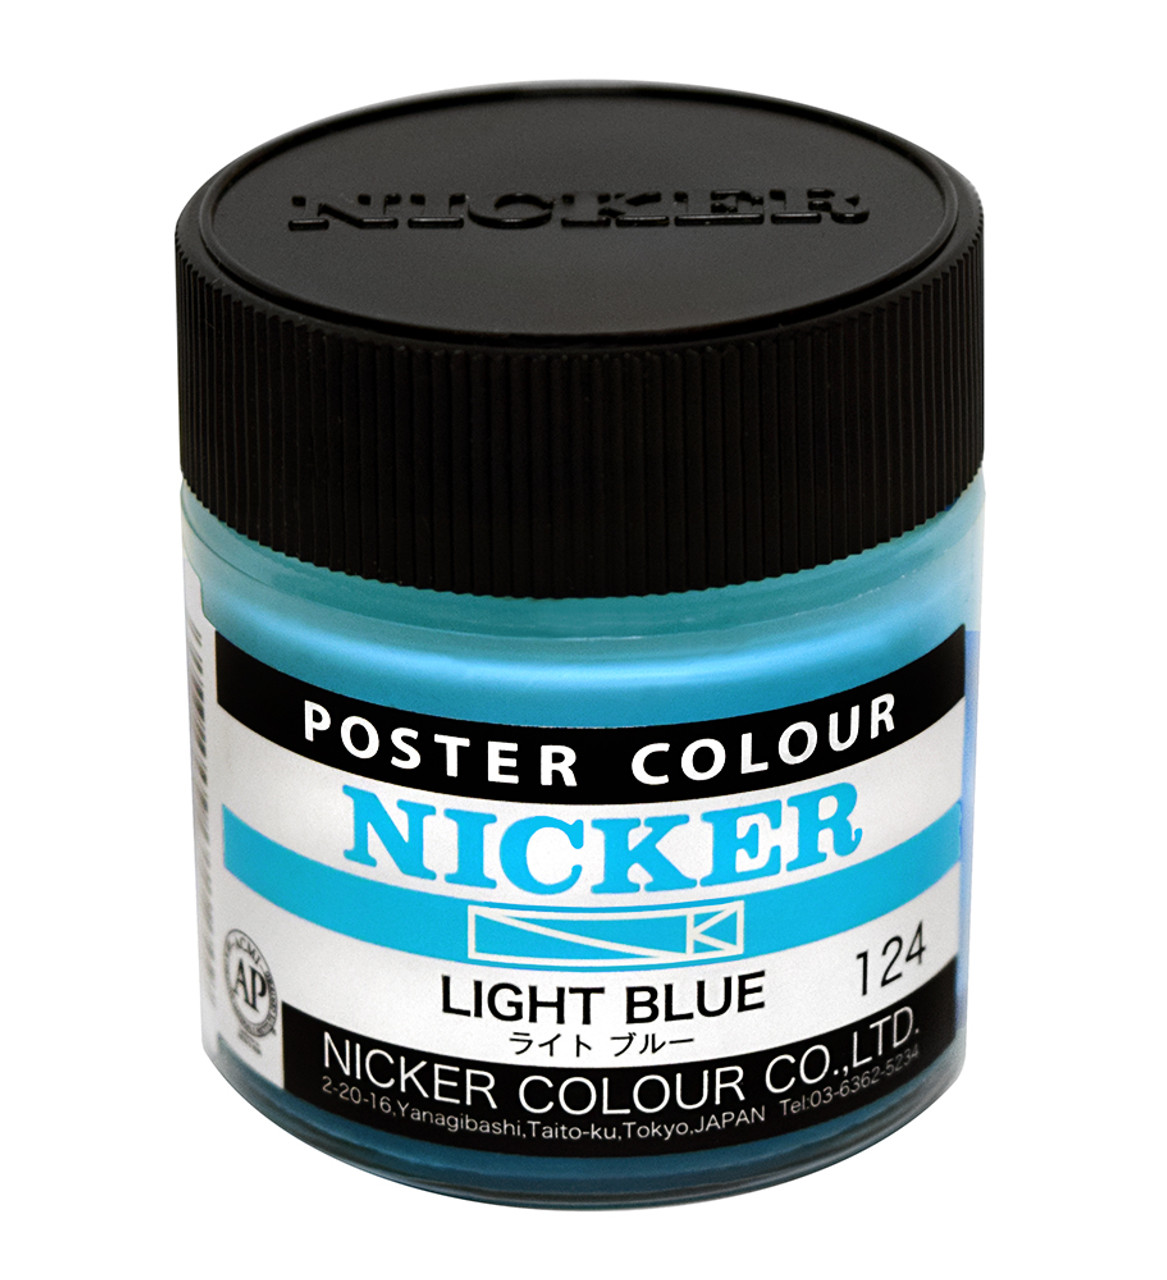 Nicker Poster Colour - Cobalt Blue (19) - 20 ml Tube